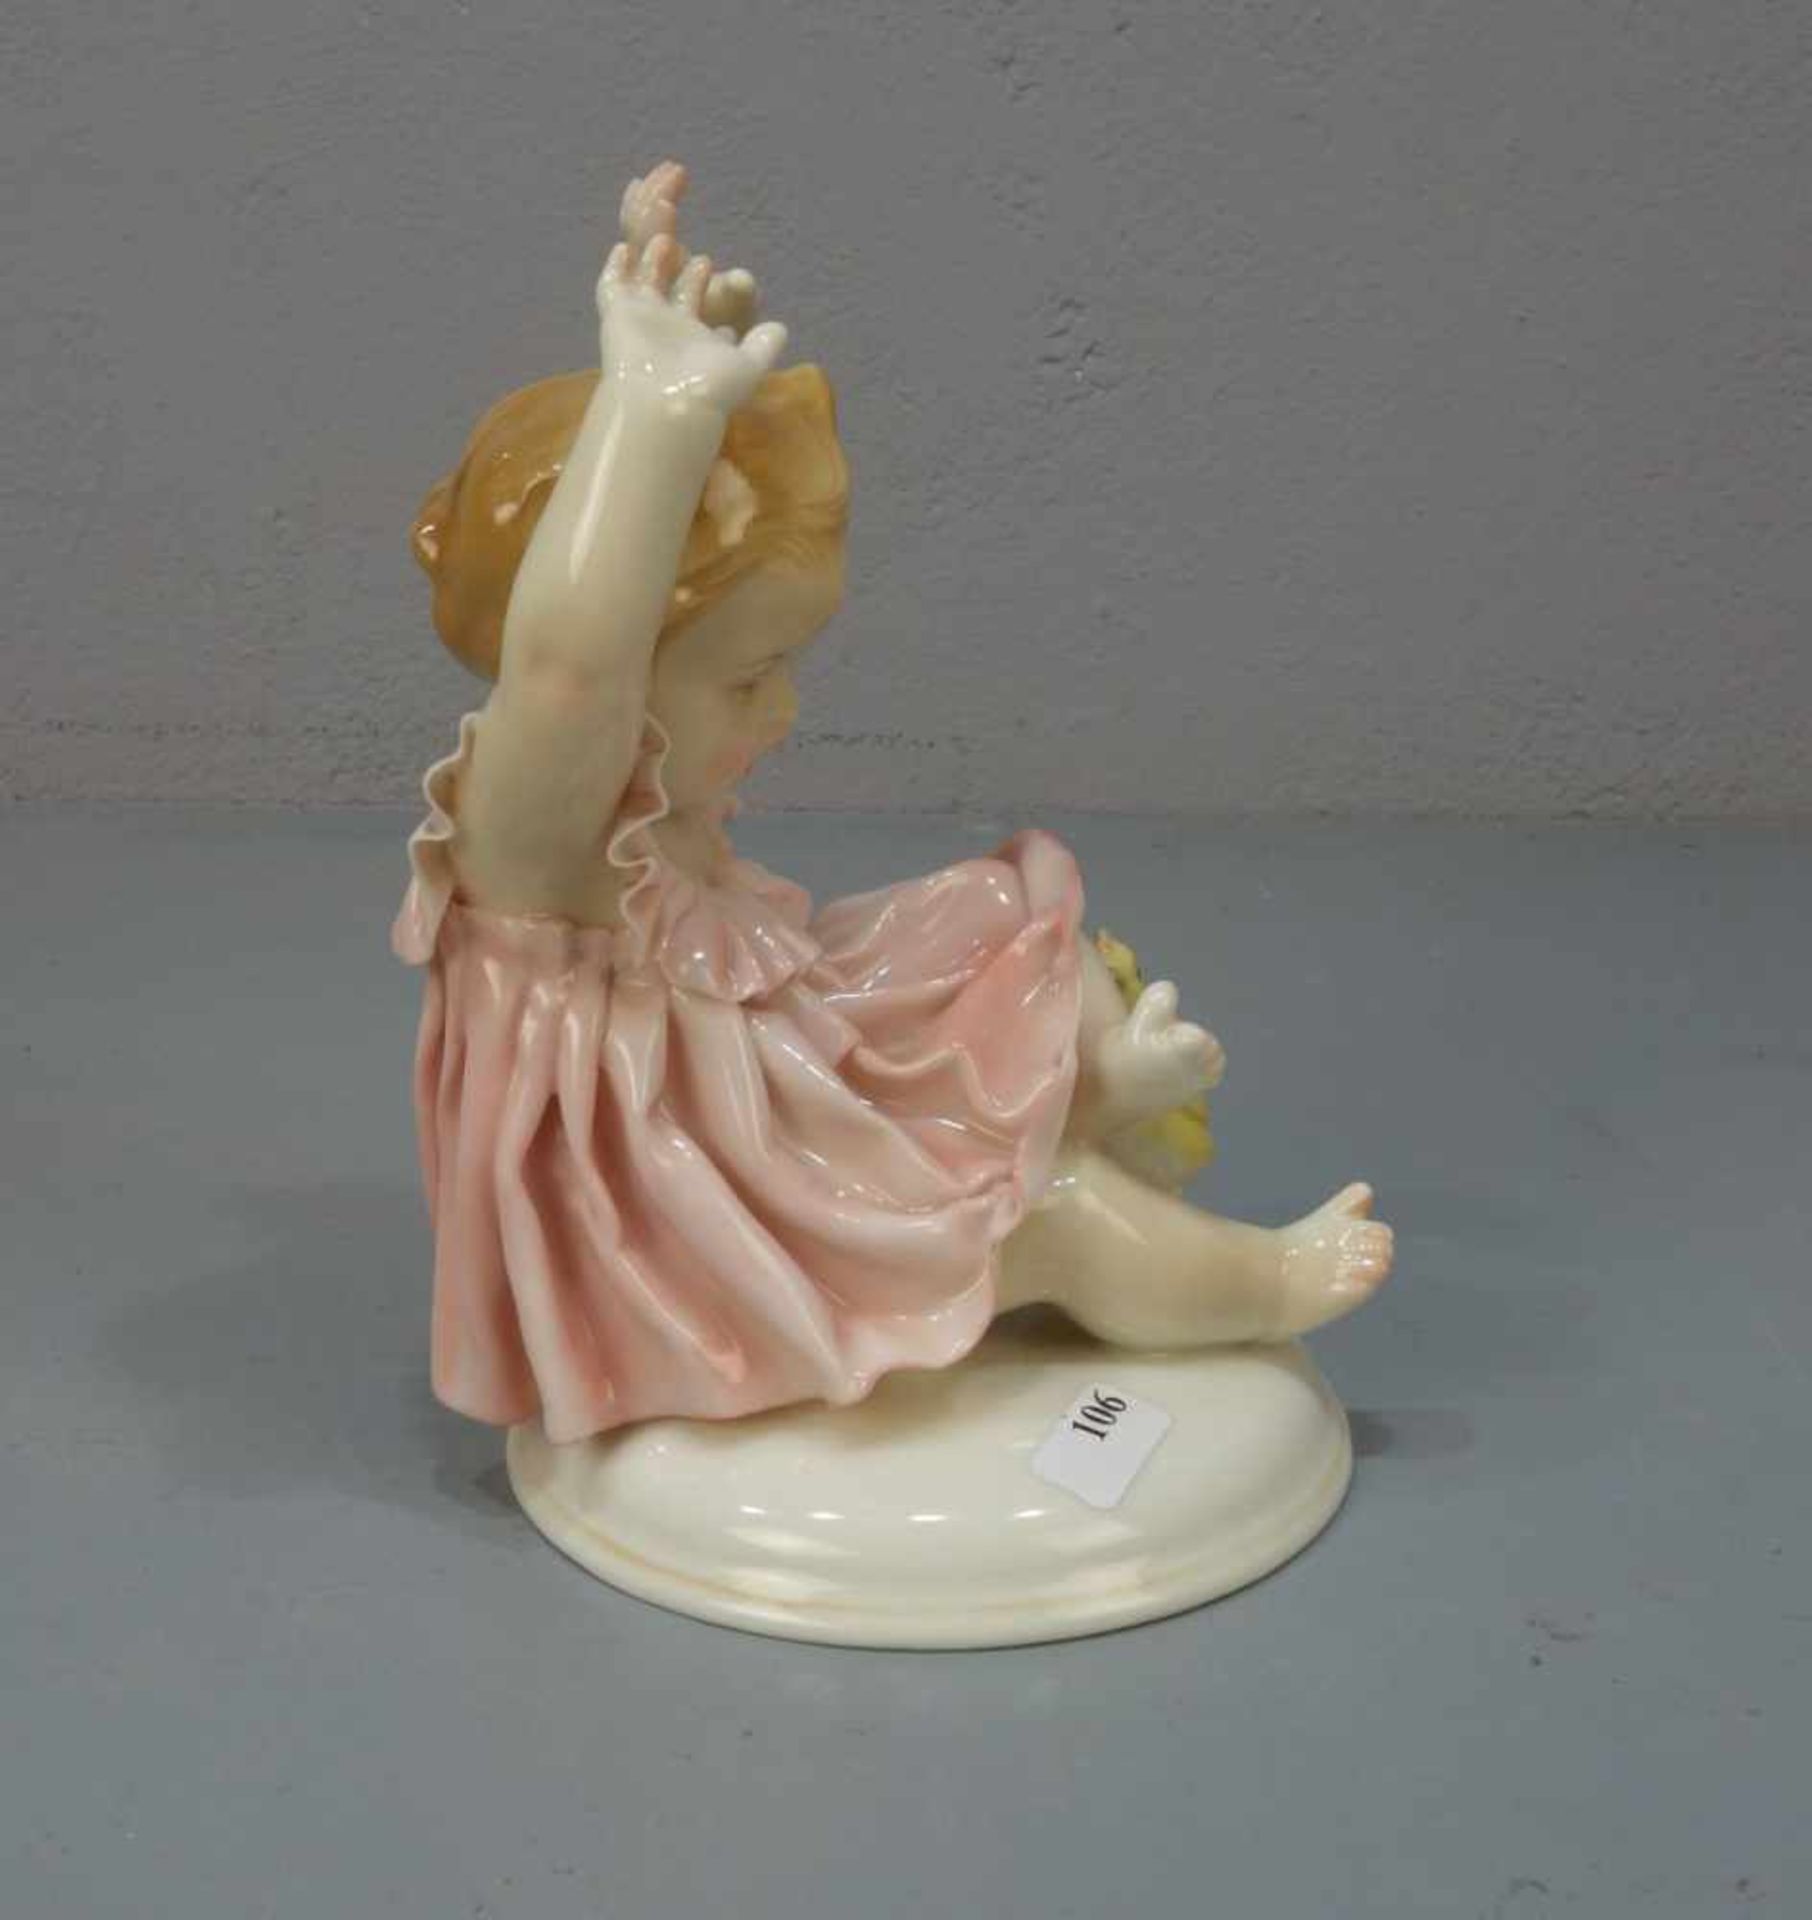 PORZELLANFIGUR: "Mädchen mit Küken" / porcelain figure "girl with chicklet", 1. Hälfte 20. Jh.,